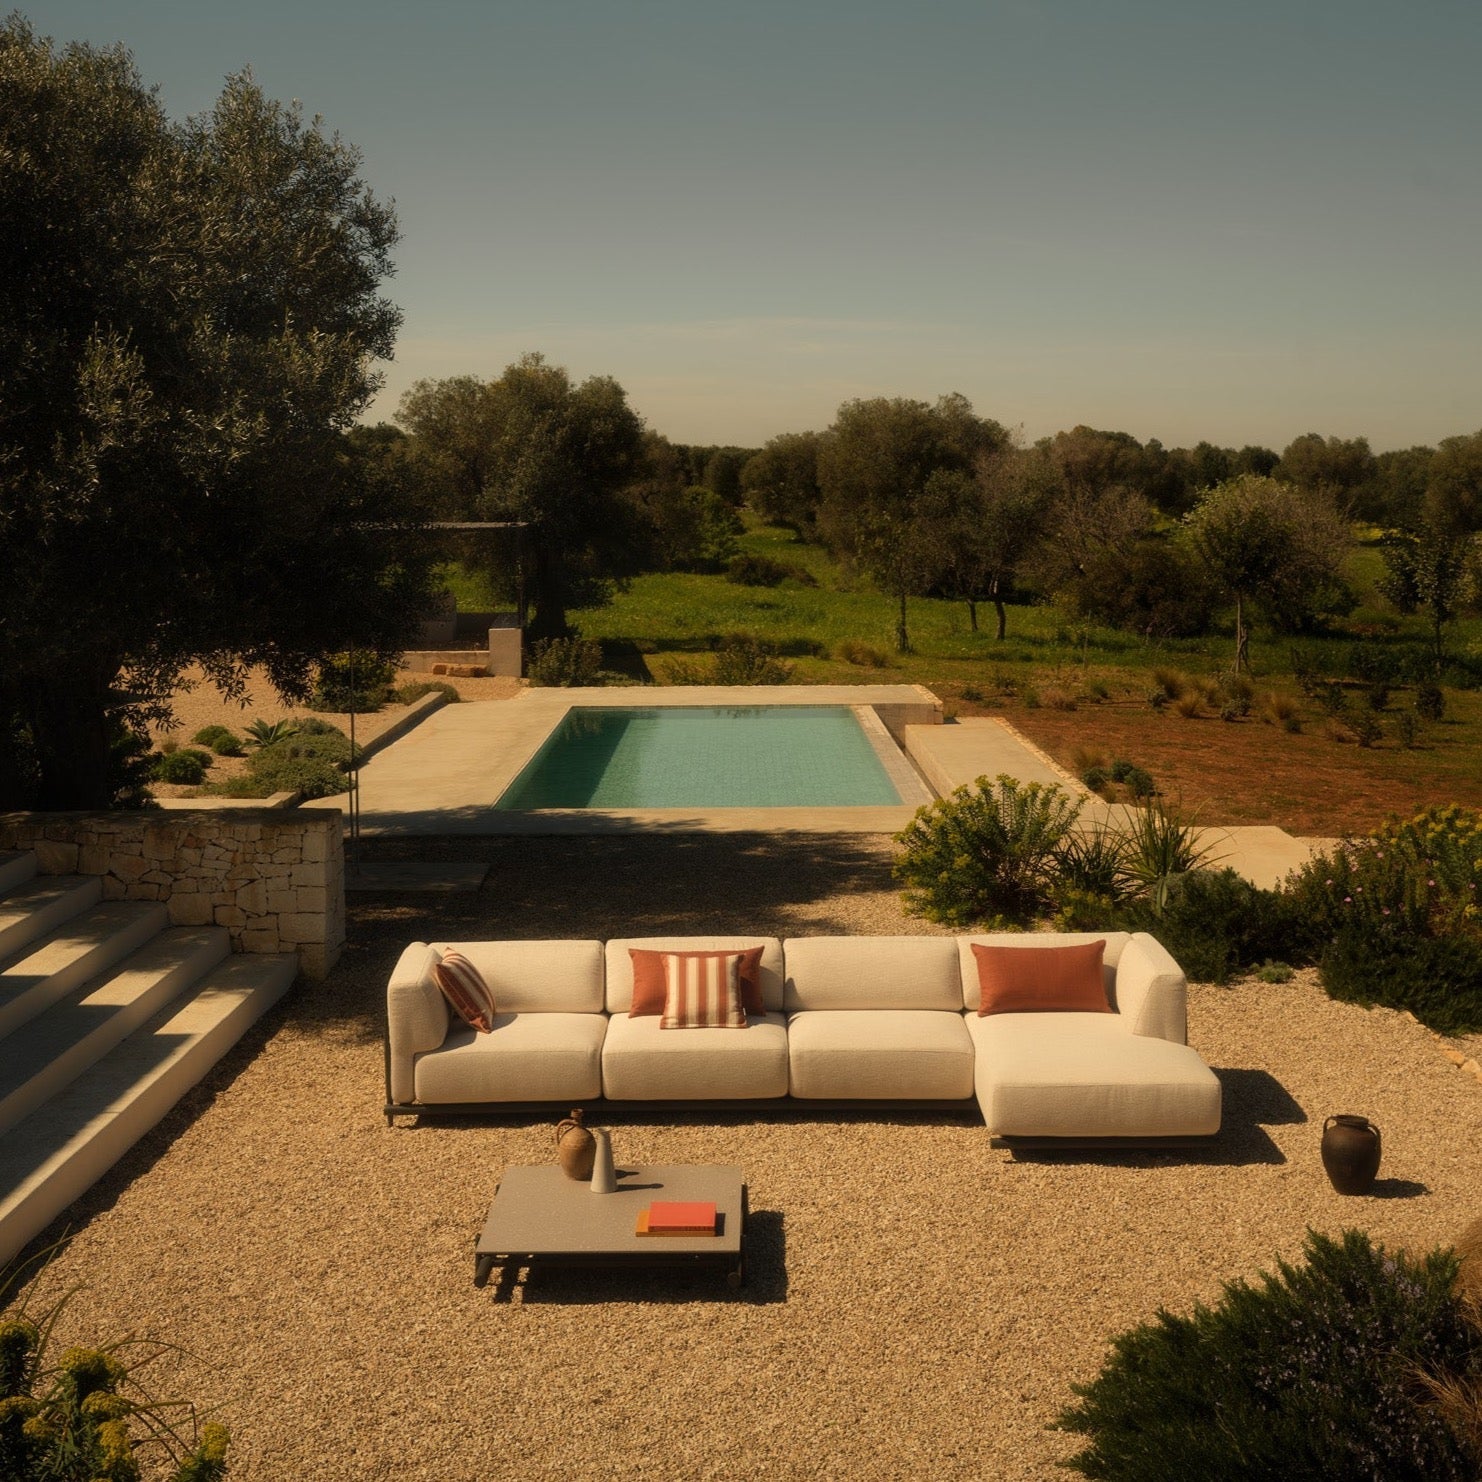 Entdecken Sie das Davos Lounge-Modul von Unopiu – Design von Matteo Nunziati für ein luxuriöses Outdoor-Erlebnis. Jetzt in Ihr Gartensofa integrieren!